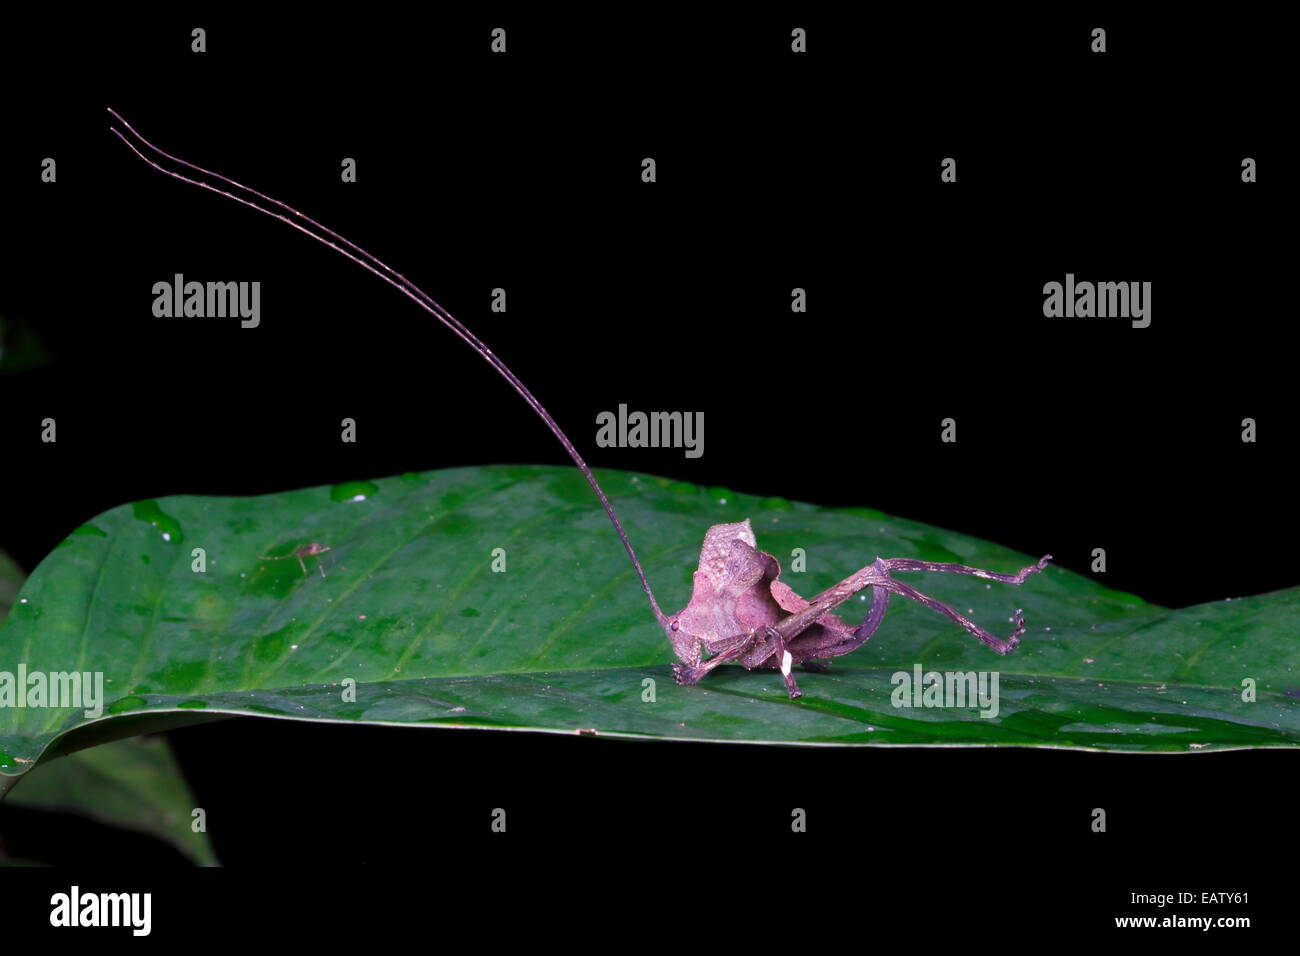 Portrait of a dead leaf mimic katydid, Tettigoniidae species. Stock Photo